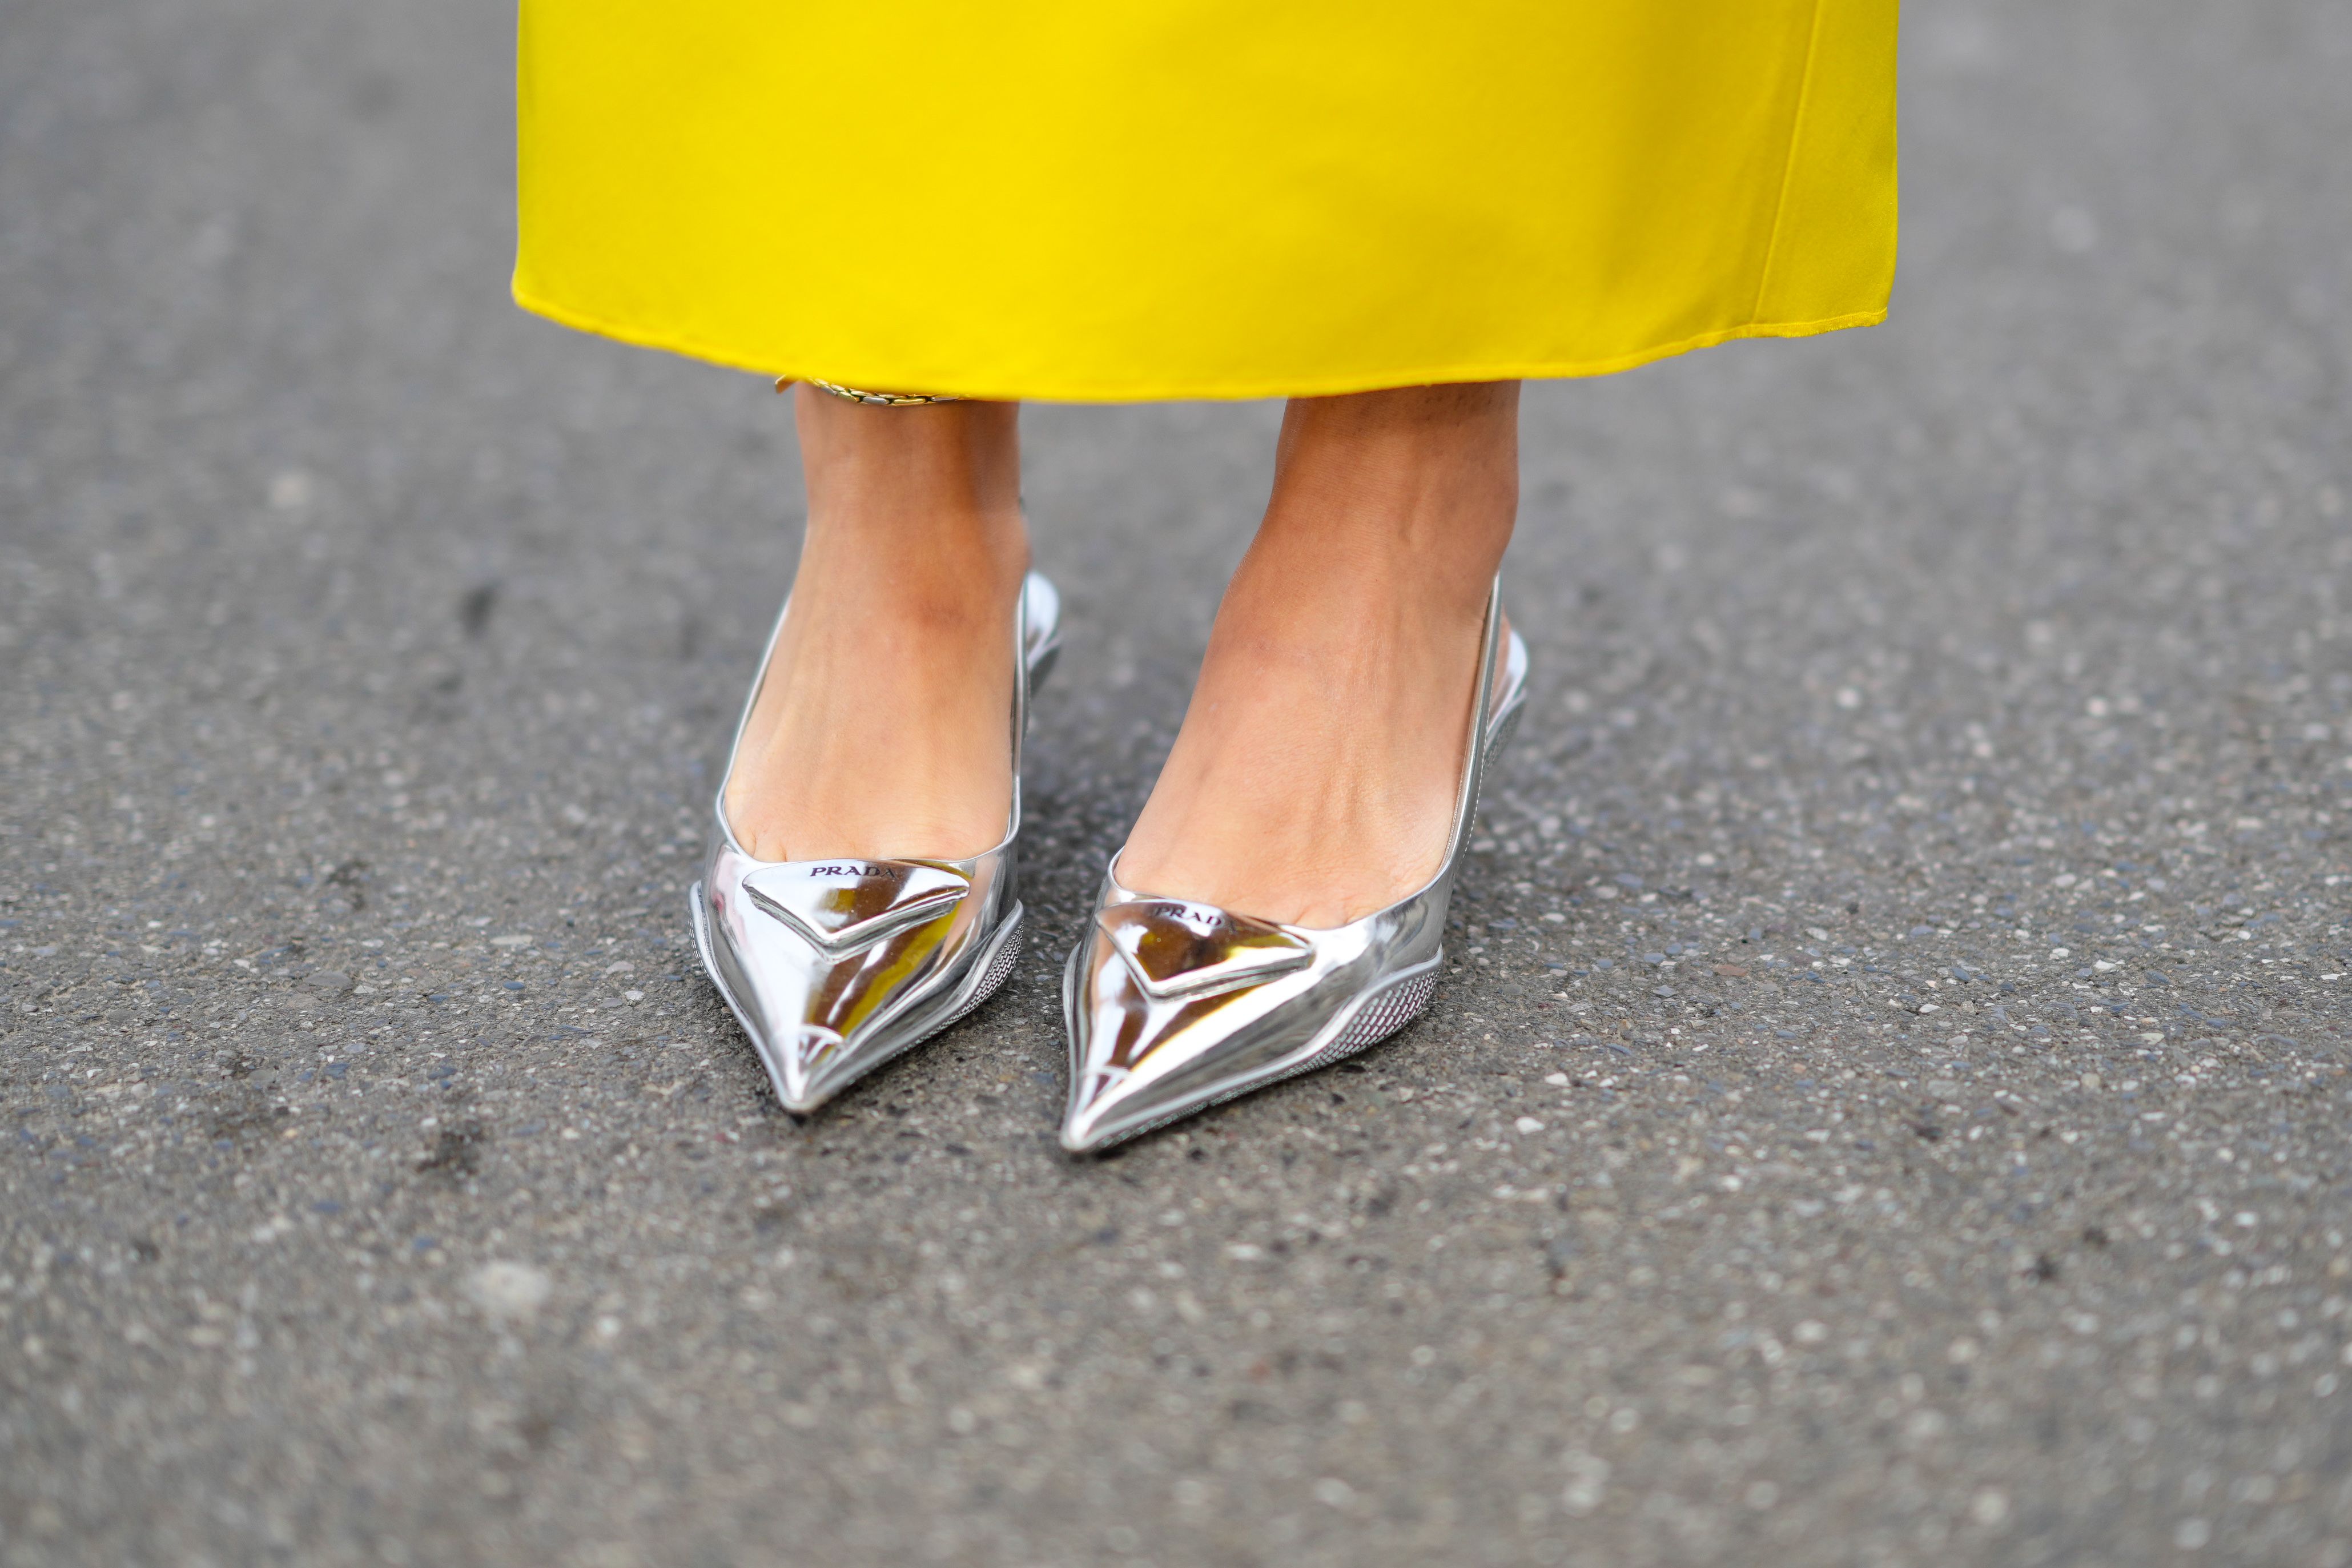 Talentoso imagen extraño Los zapatos plateados de lujodel street style llegan a Zara